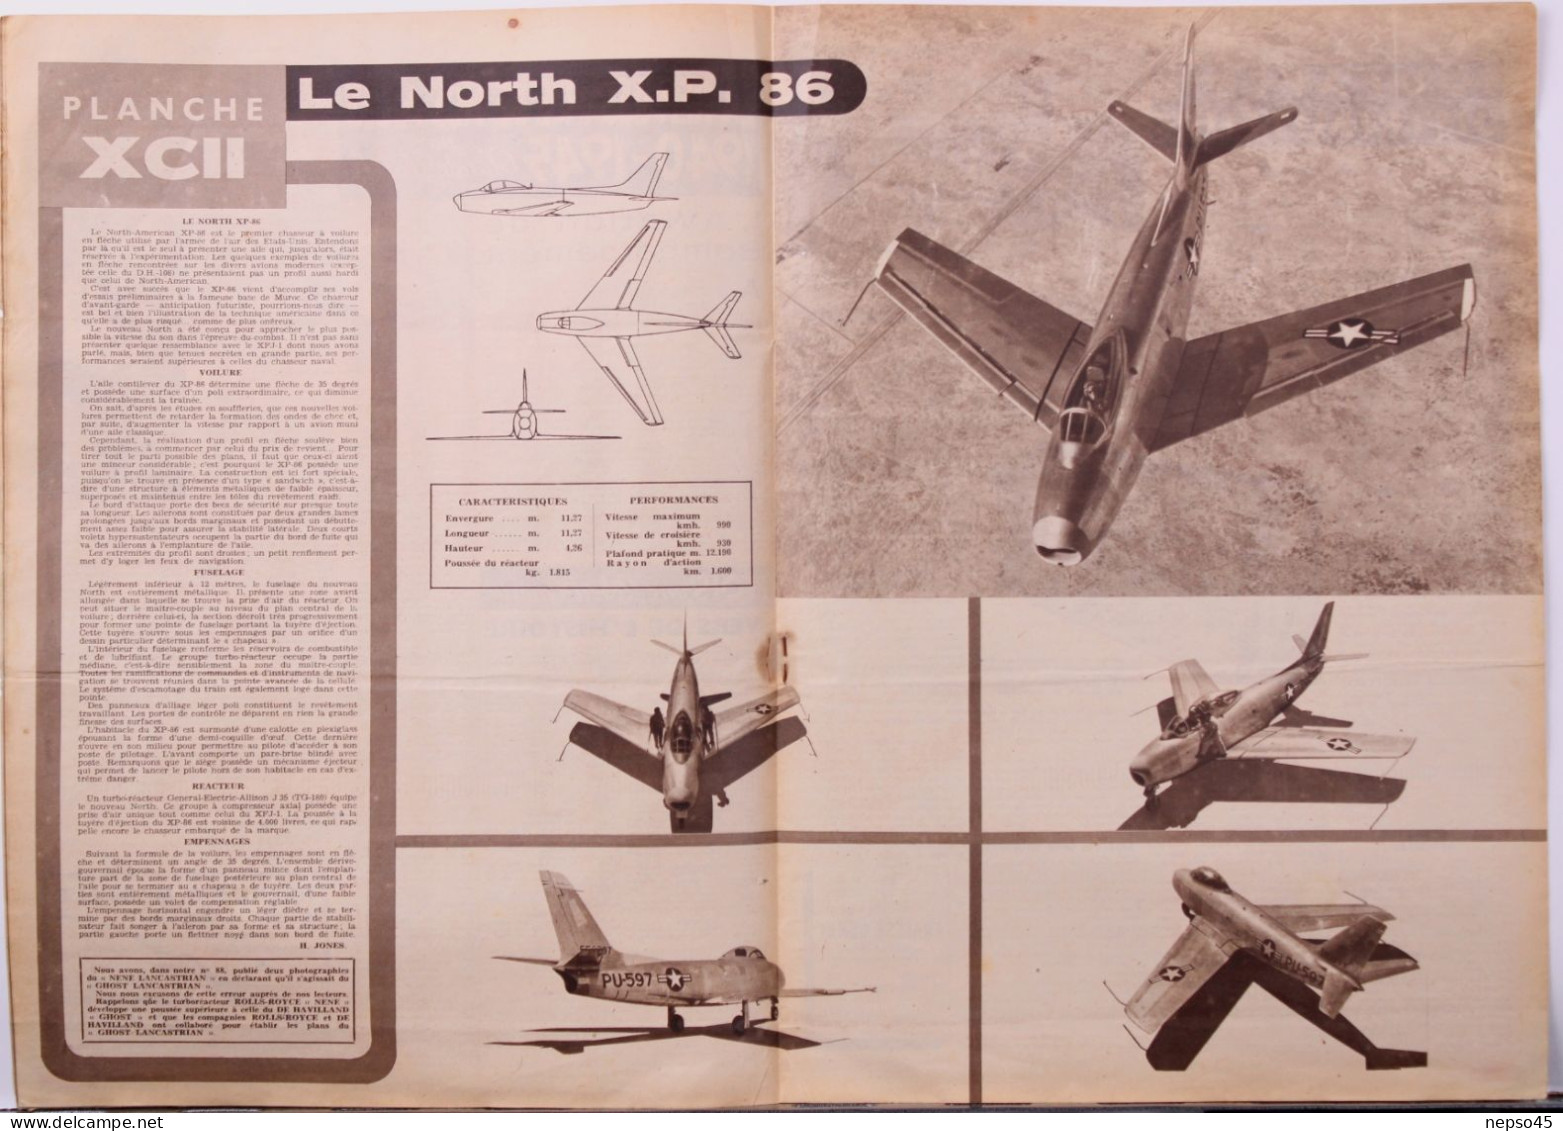 Magazine " Décollage " Aviation Mondiale.Le North X.P. 86.Par Marcel Doret Pilote D'essai.Le V.G.-70 Poursuit Ses Essais - Aviation